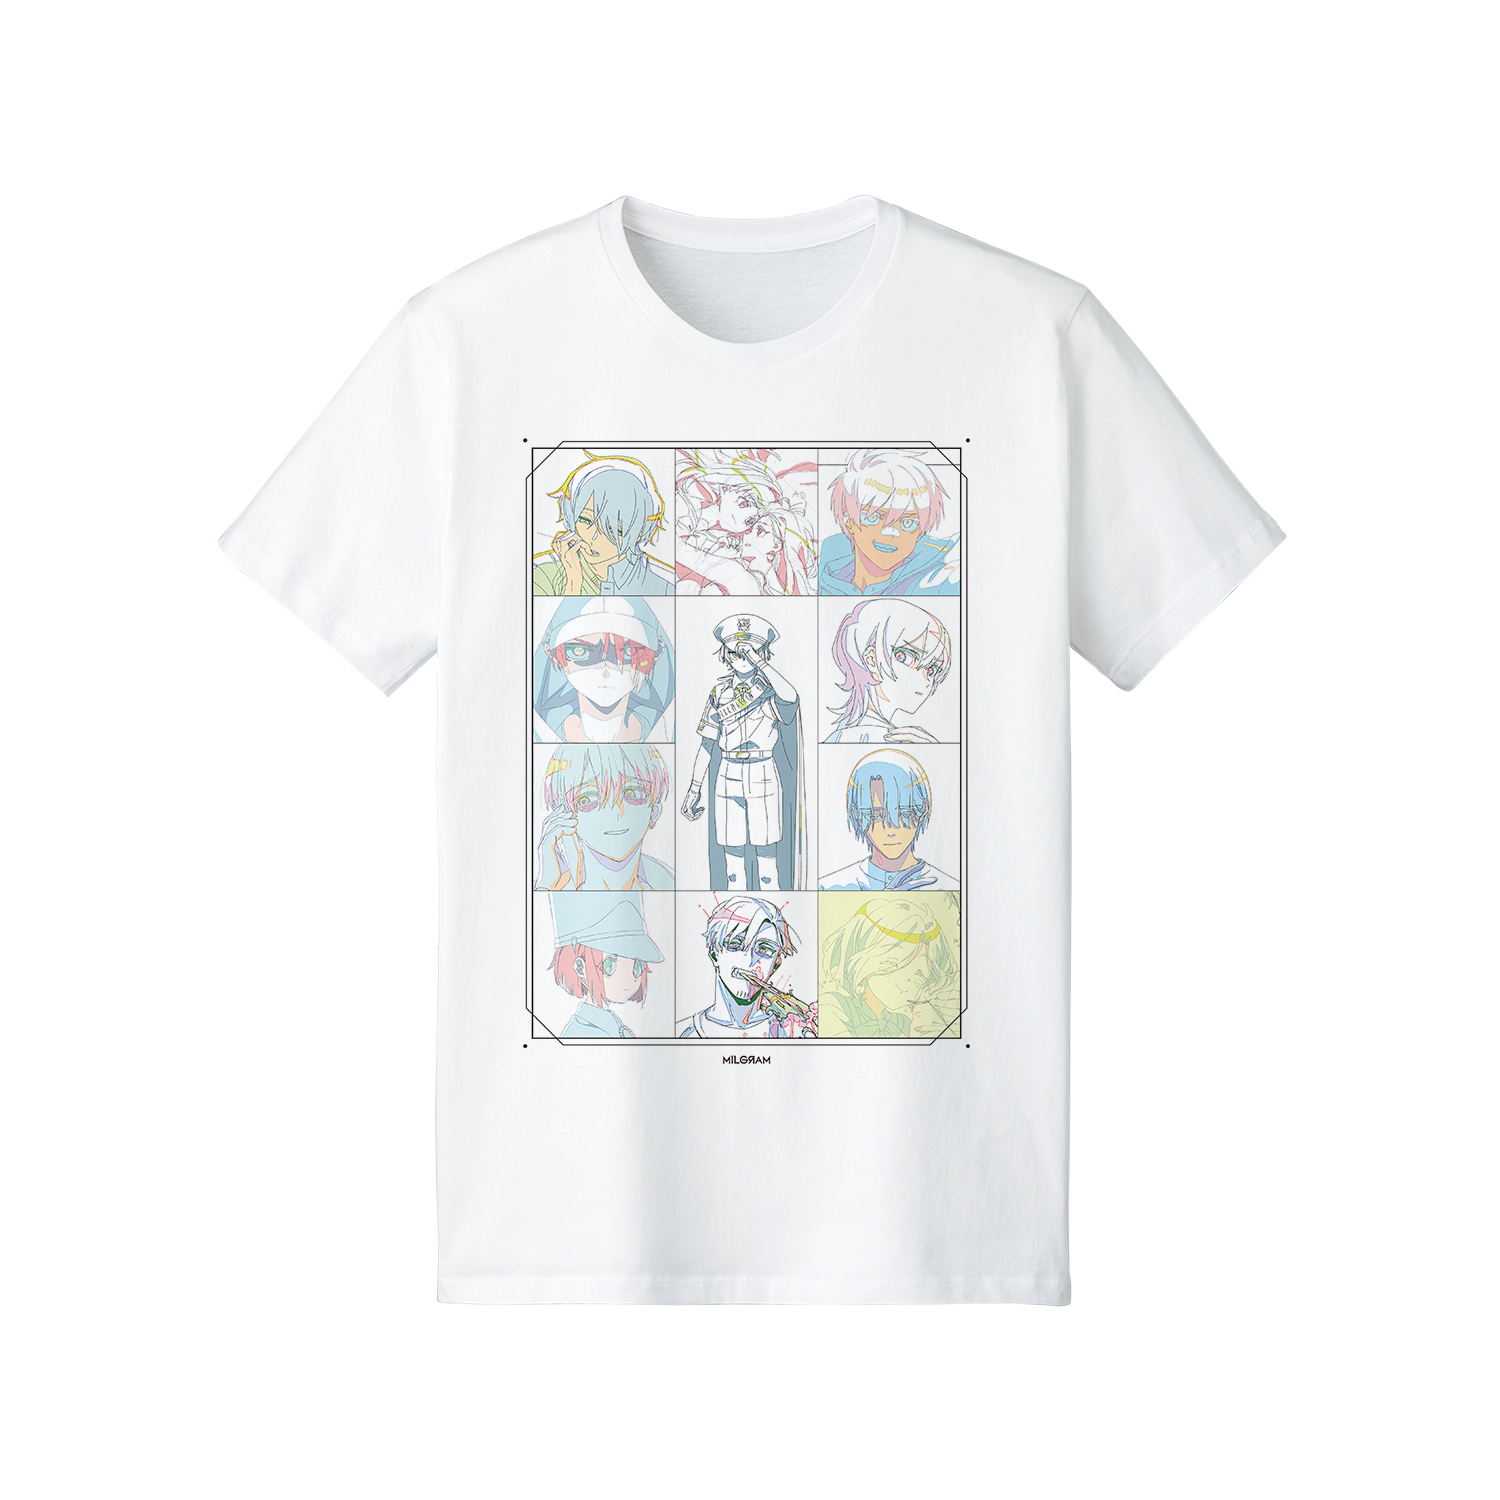 【굿즈-티셔츠】 MILGRAM 원화 티셔츠 제2심ver. 남성용 XL